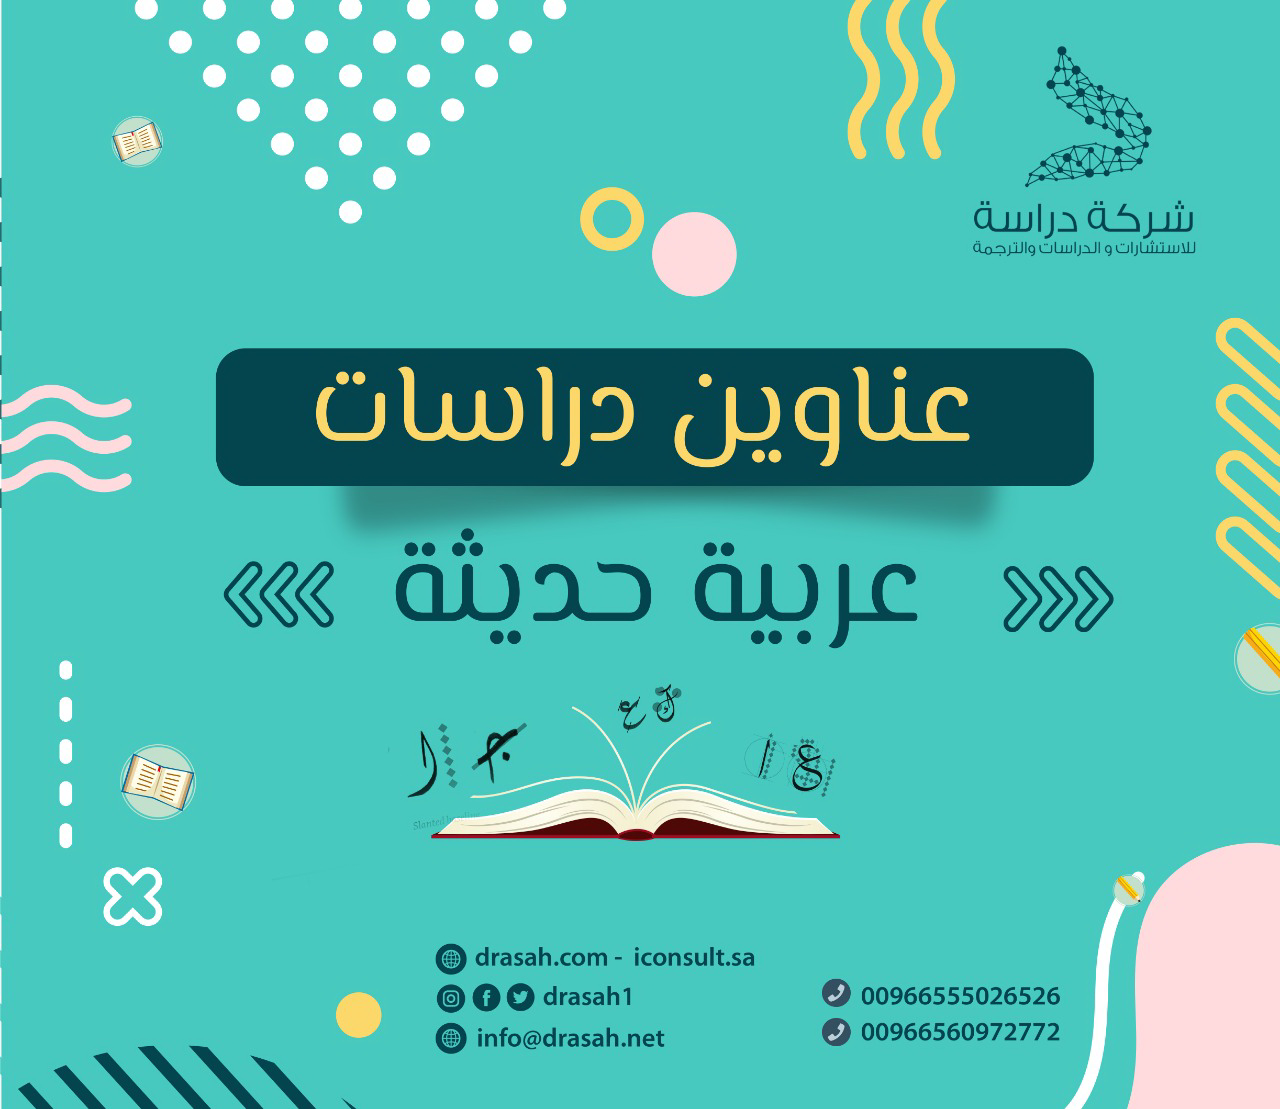 عناوين دراسات سابقة عربية حول استخدام استراتيجيات متعددة لعلاج صعوبات تعلم القراءة والكتابة